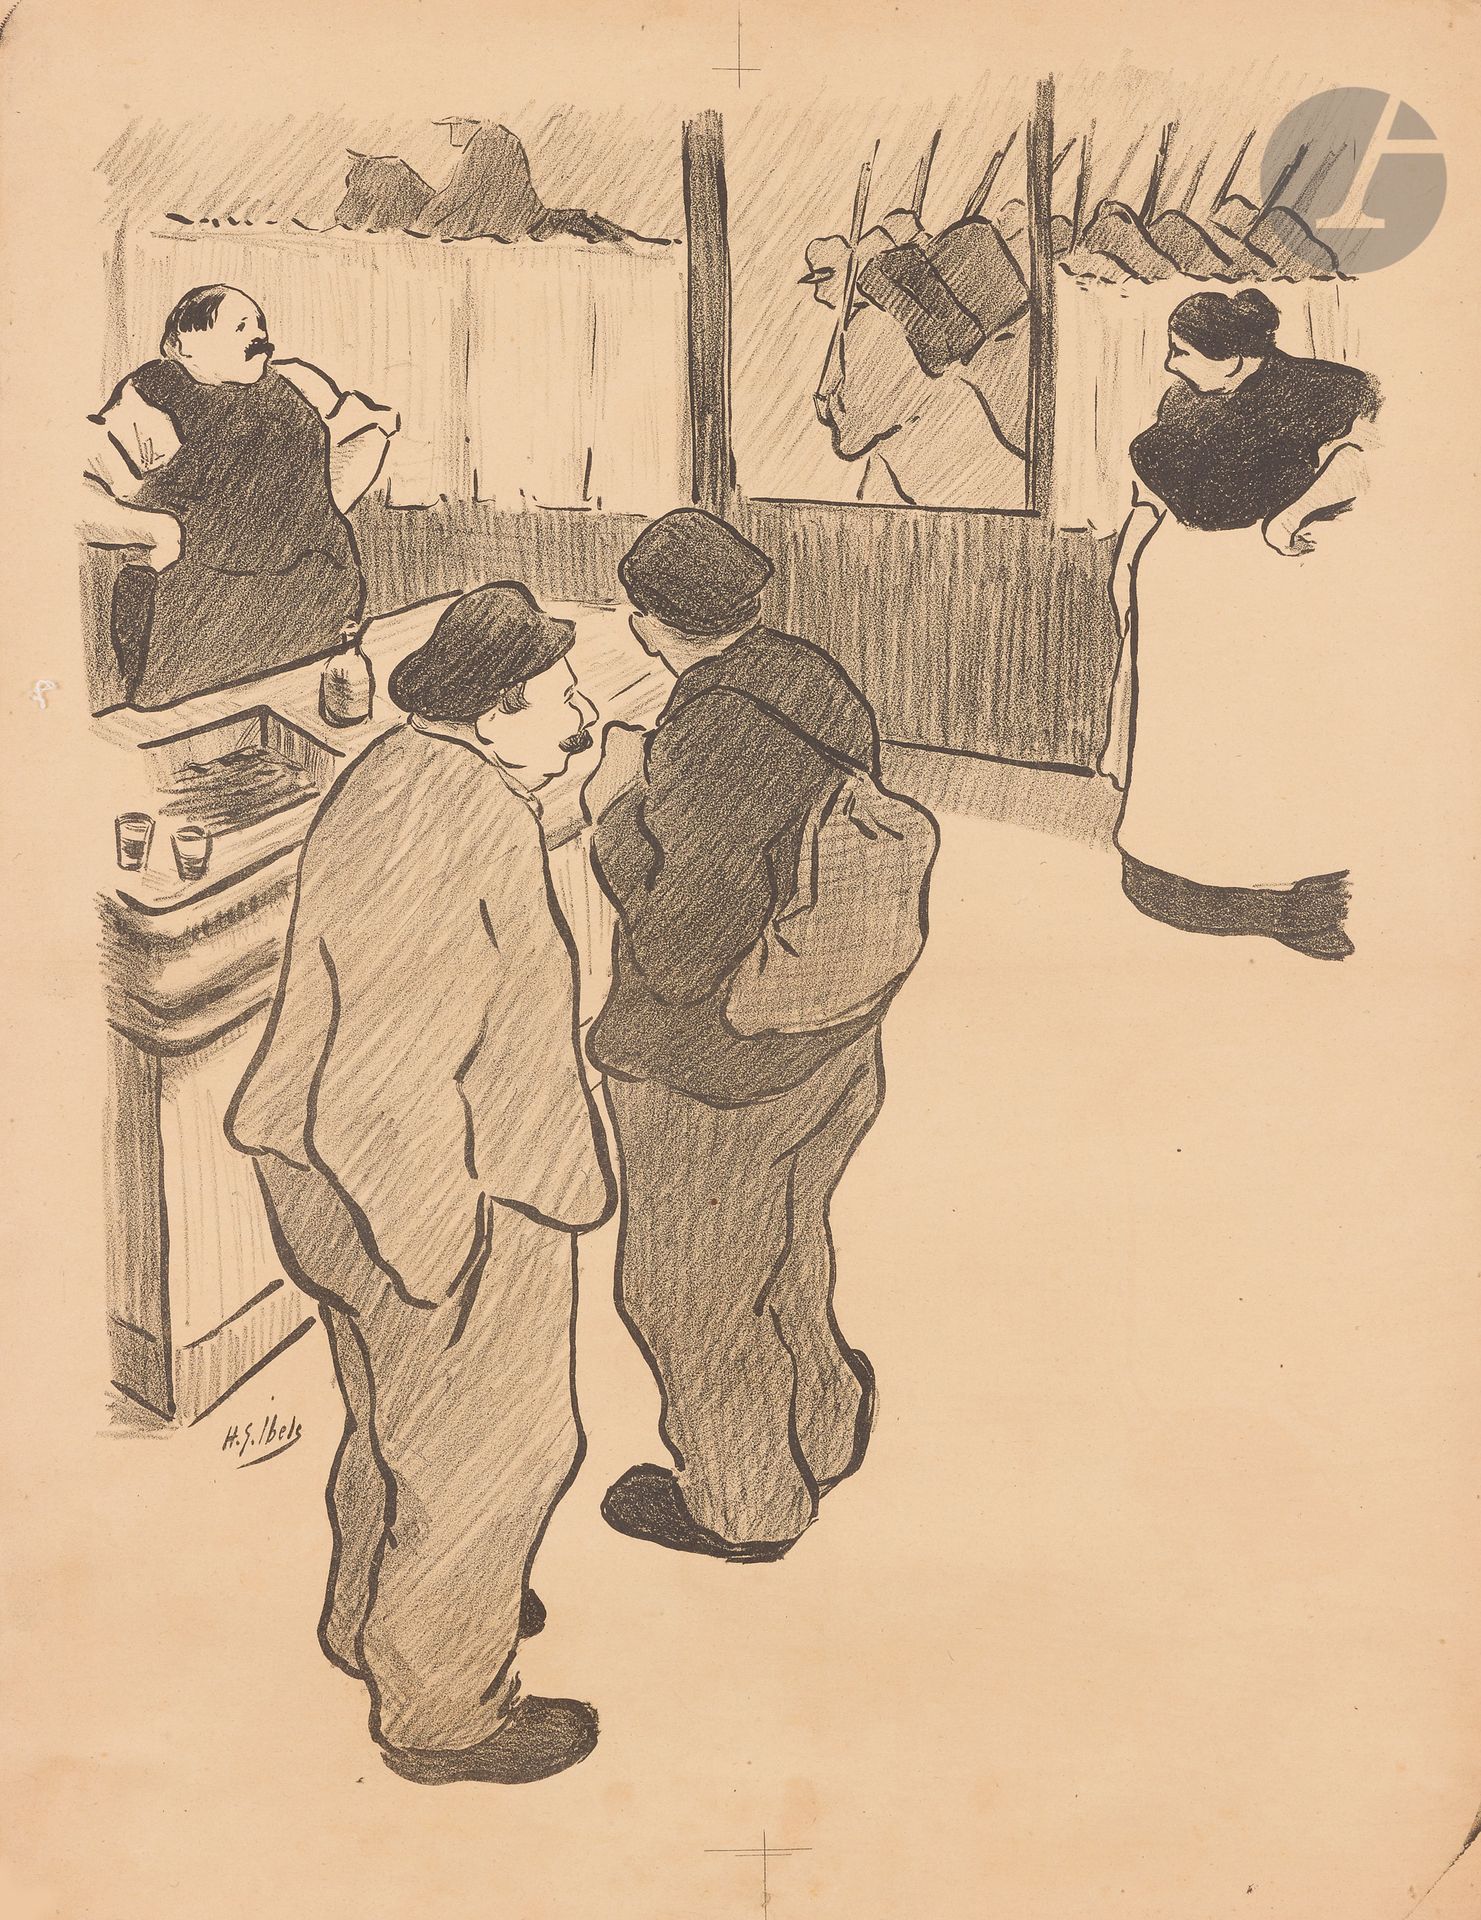 Null 亨利-加布里埃尔-伊贝尔(1867-1936
)《小兵》，1893年。(信前)。
染色石版画。用布包着。
无印刷品，
签名在左中部
。

罕见。状况良&hellip;